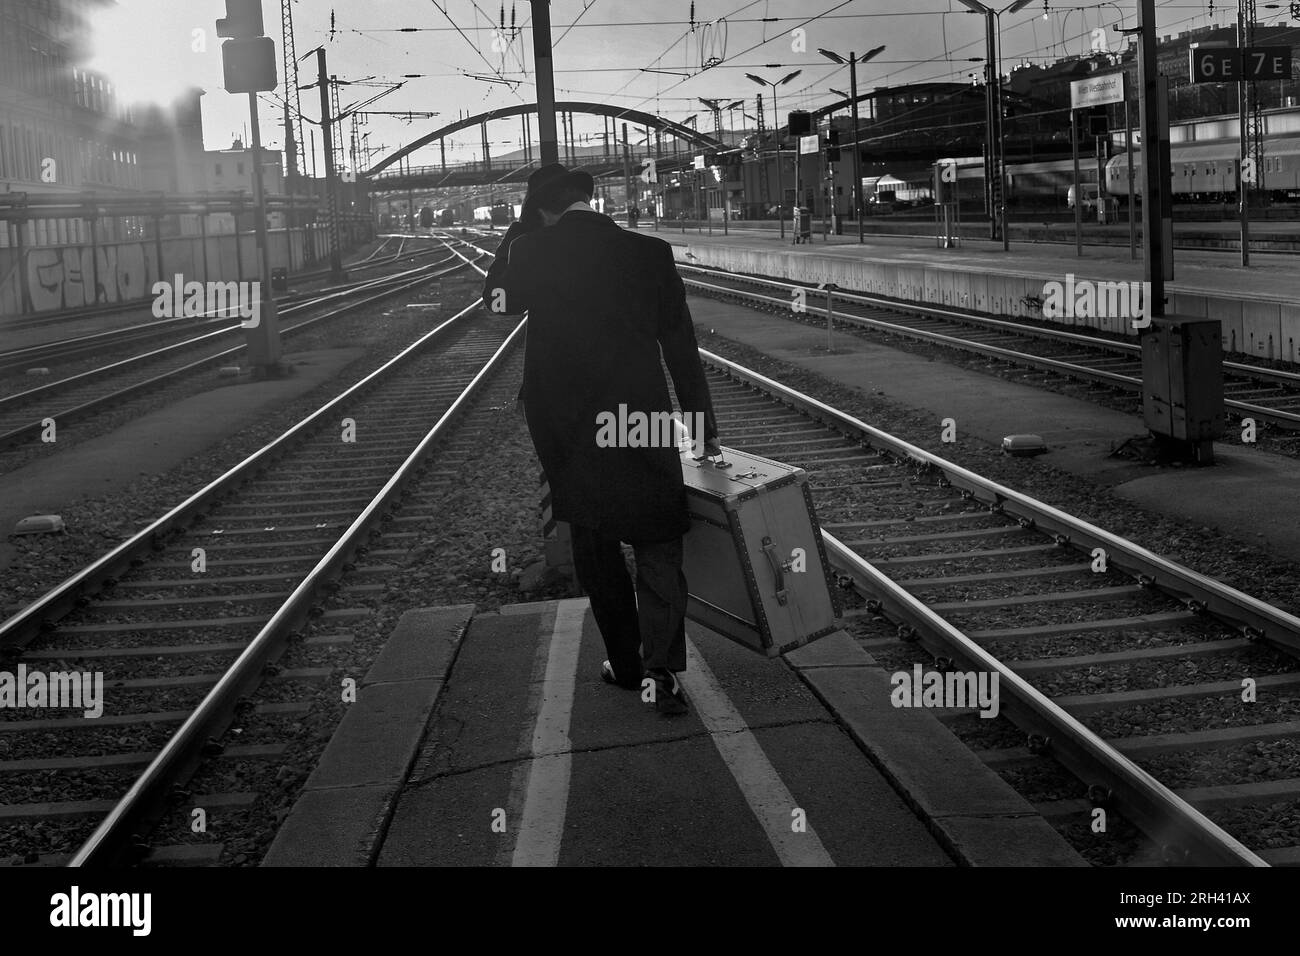 El hombre con la maleta camina al extremo lejano de los estantes de la estación de la plataforma en horas tempranas de la mañana Foto de stock